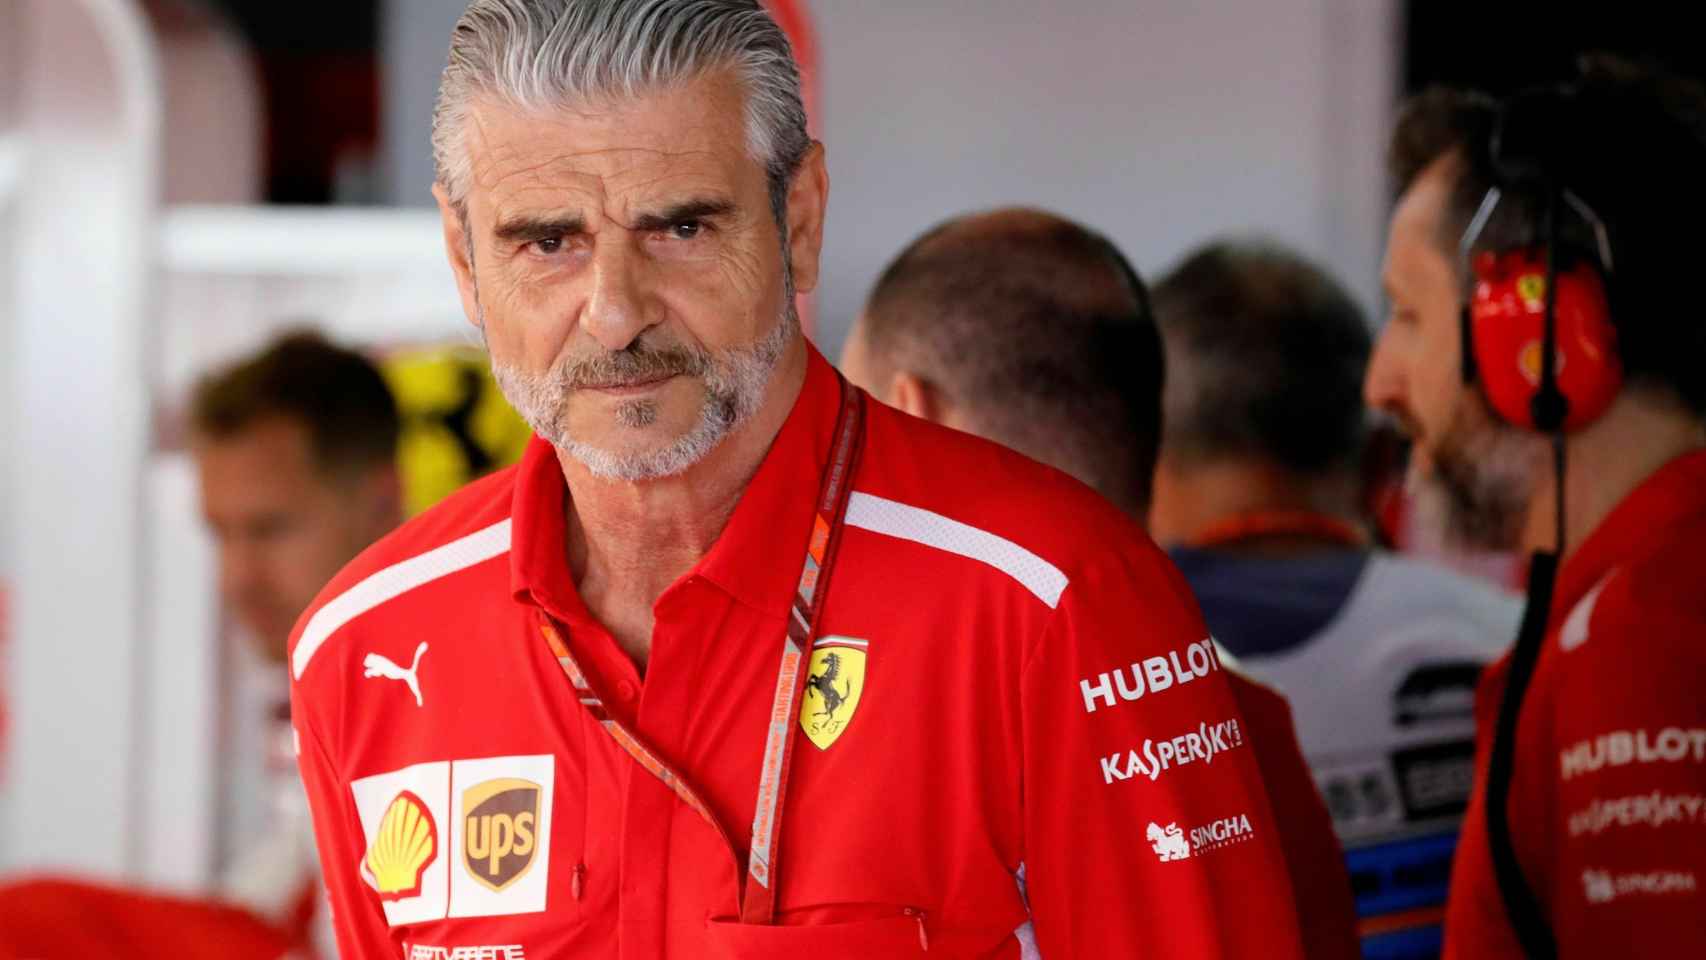 Arrivabene, exdirector de la escudería Ferrari